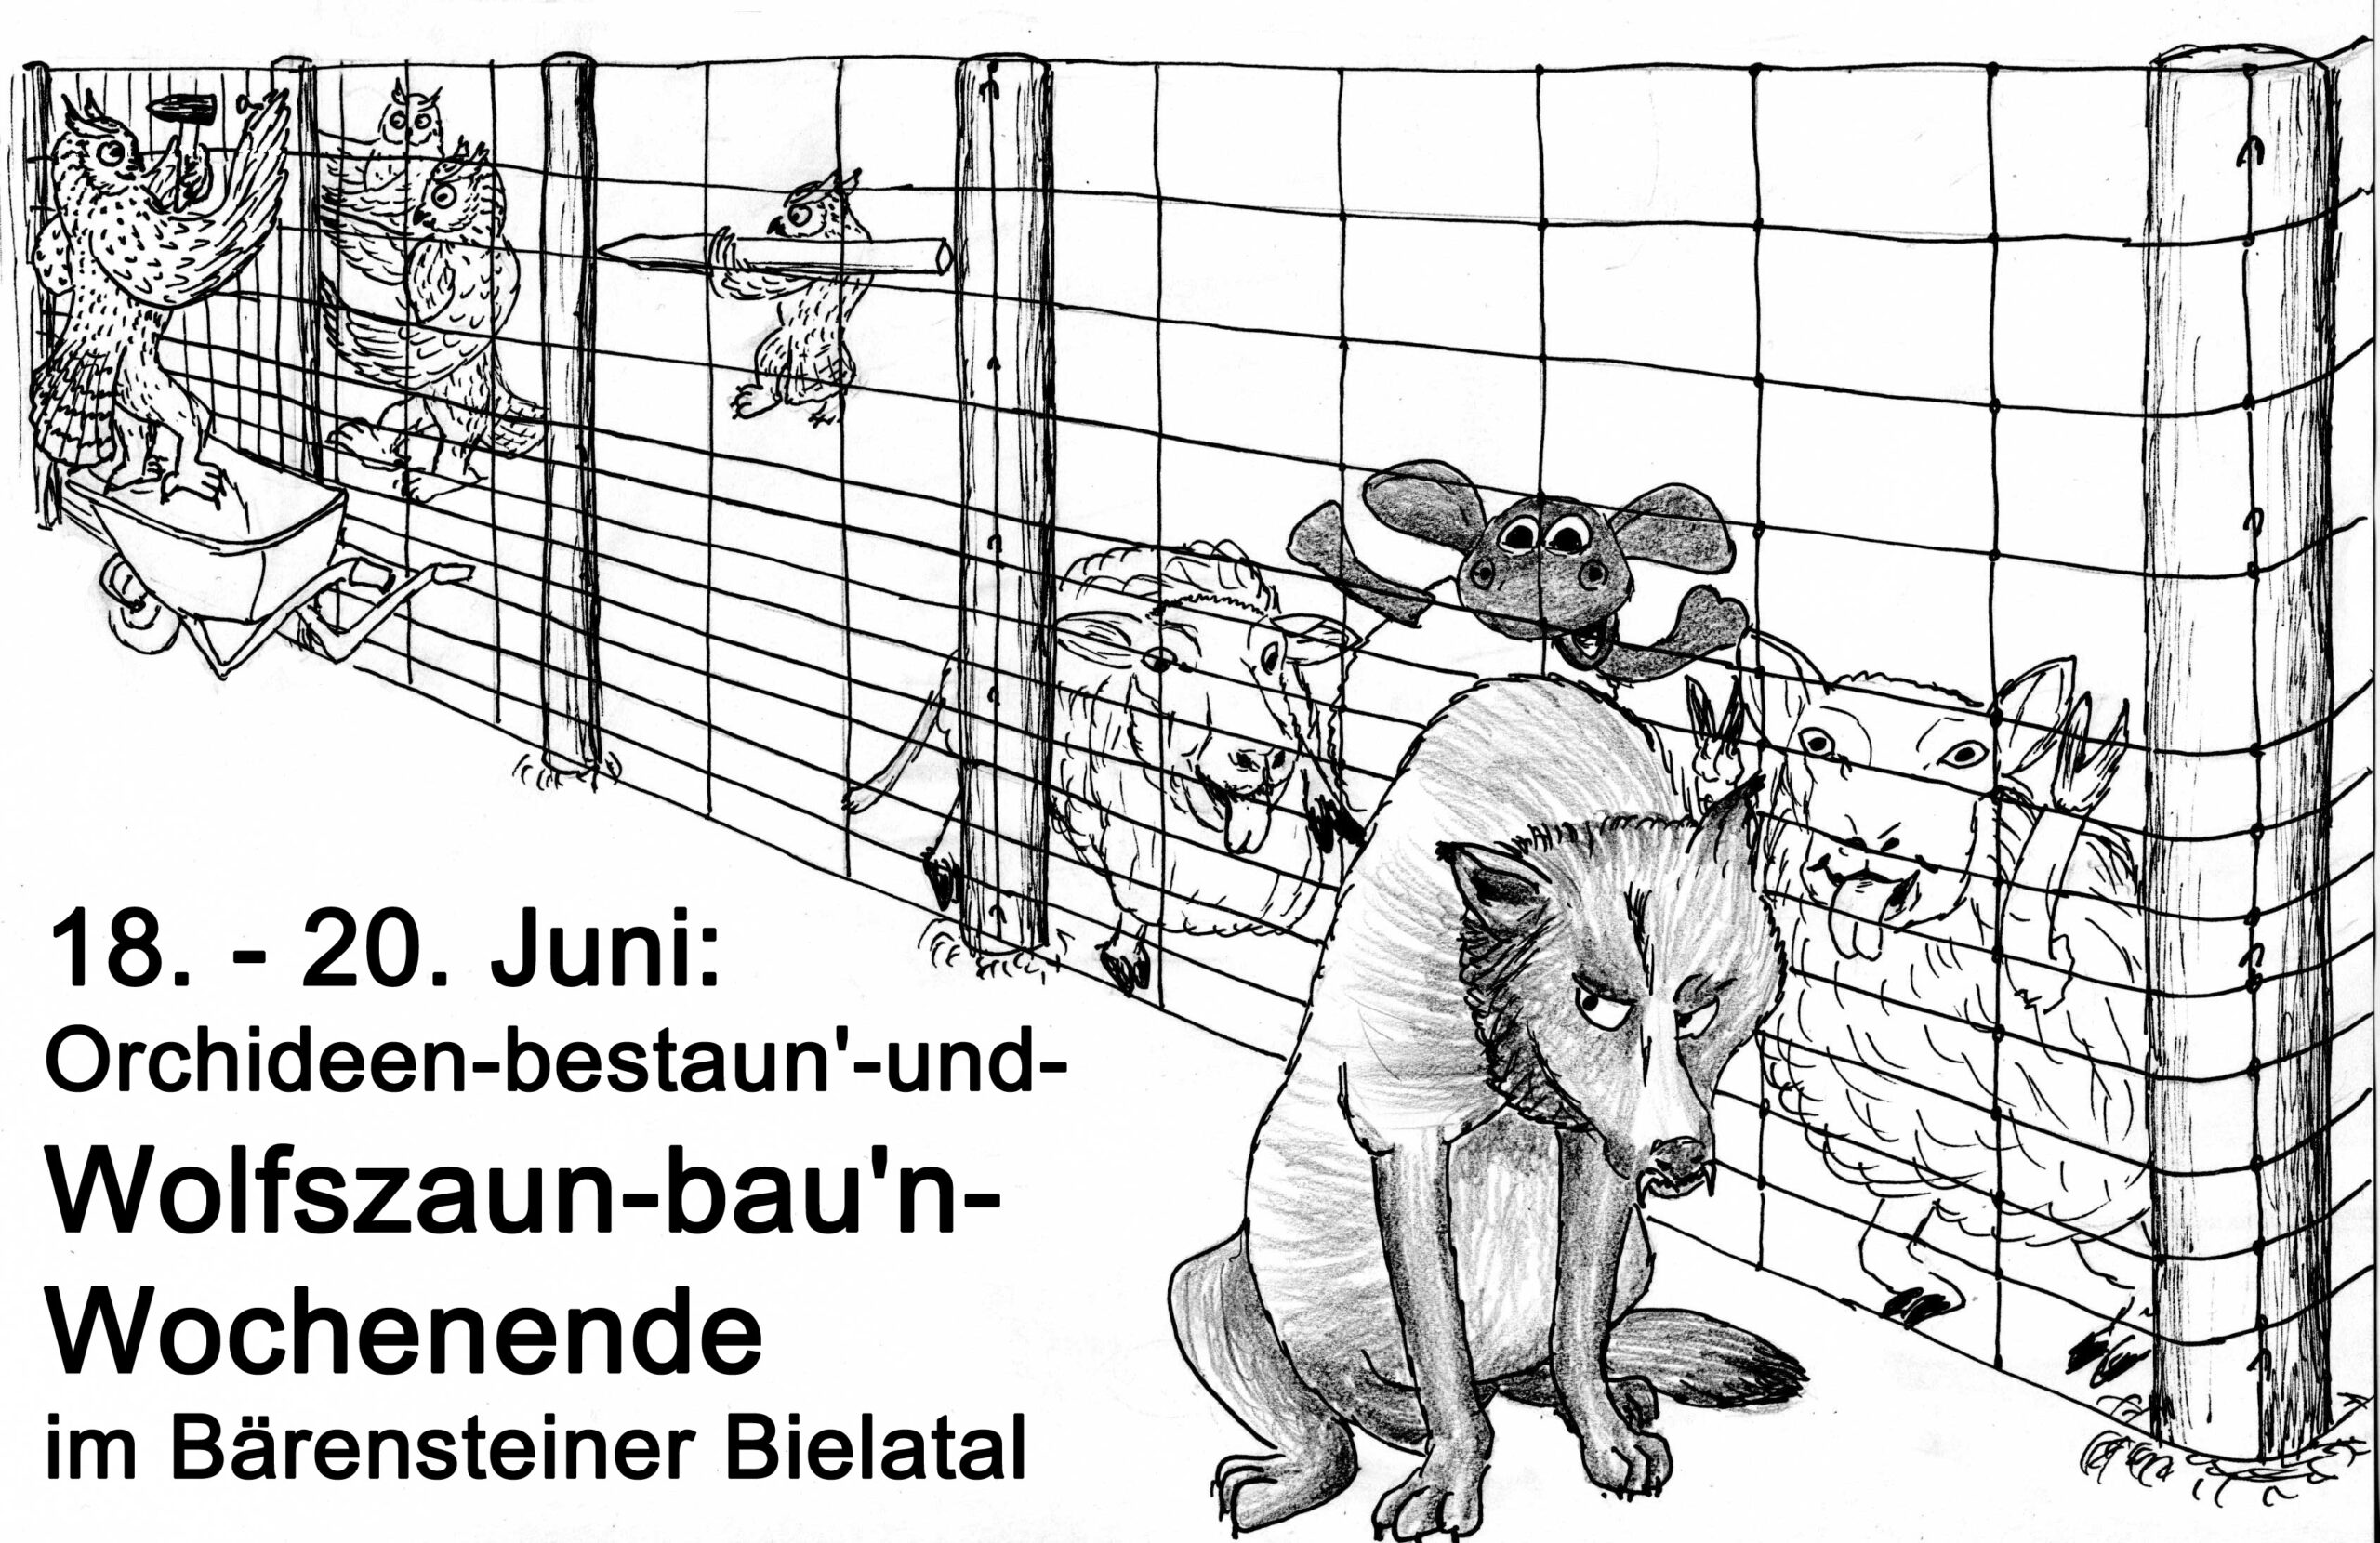 18. – 20. Juni: Orchideen-bestaun’-und-Wolfszaun-bau’n-Wochenende